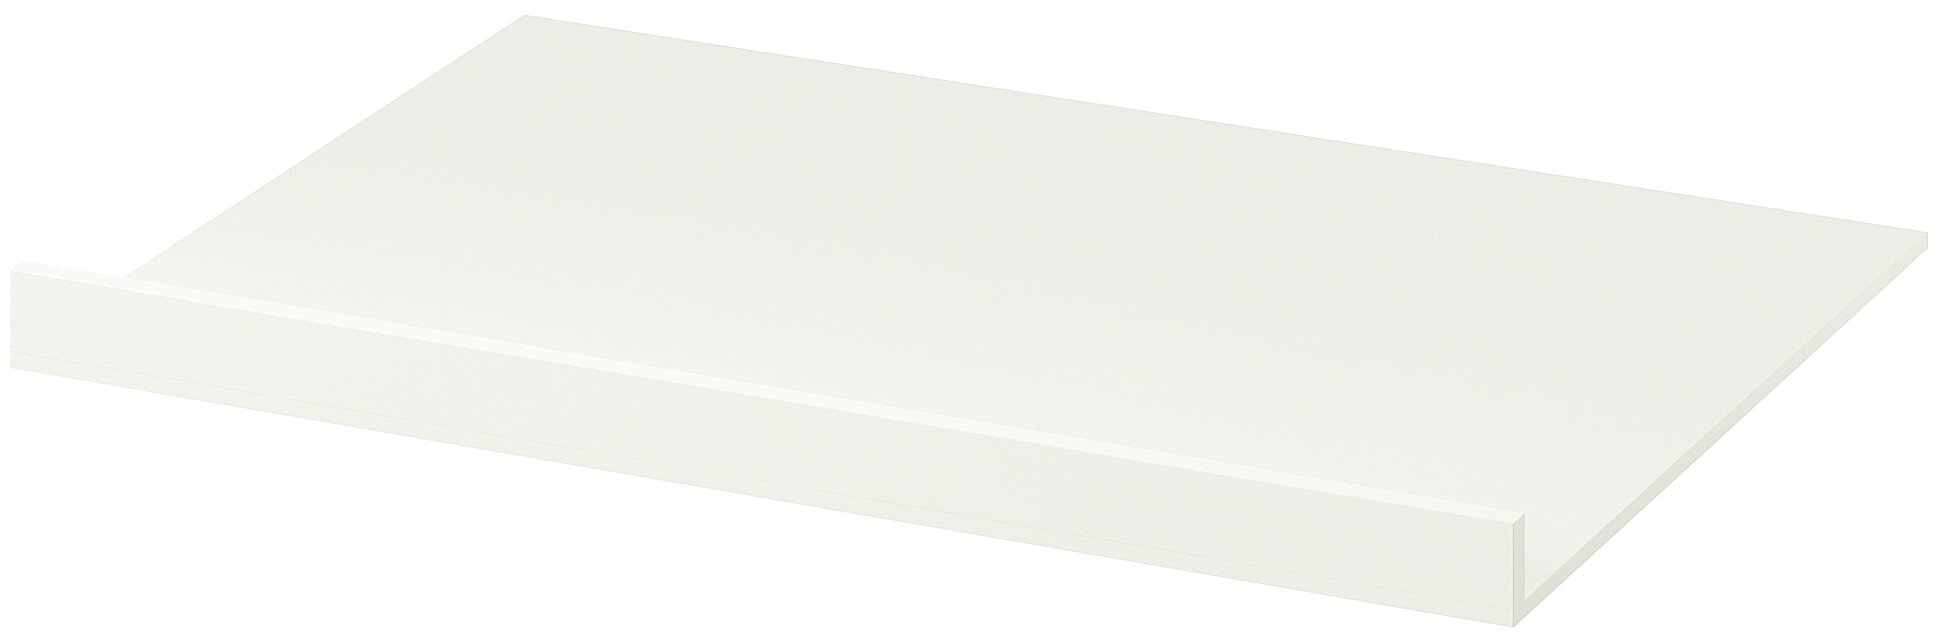 Вставка ИКЕА НИТТИНГ 60 см под варочную панель, белый